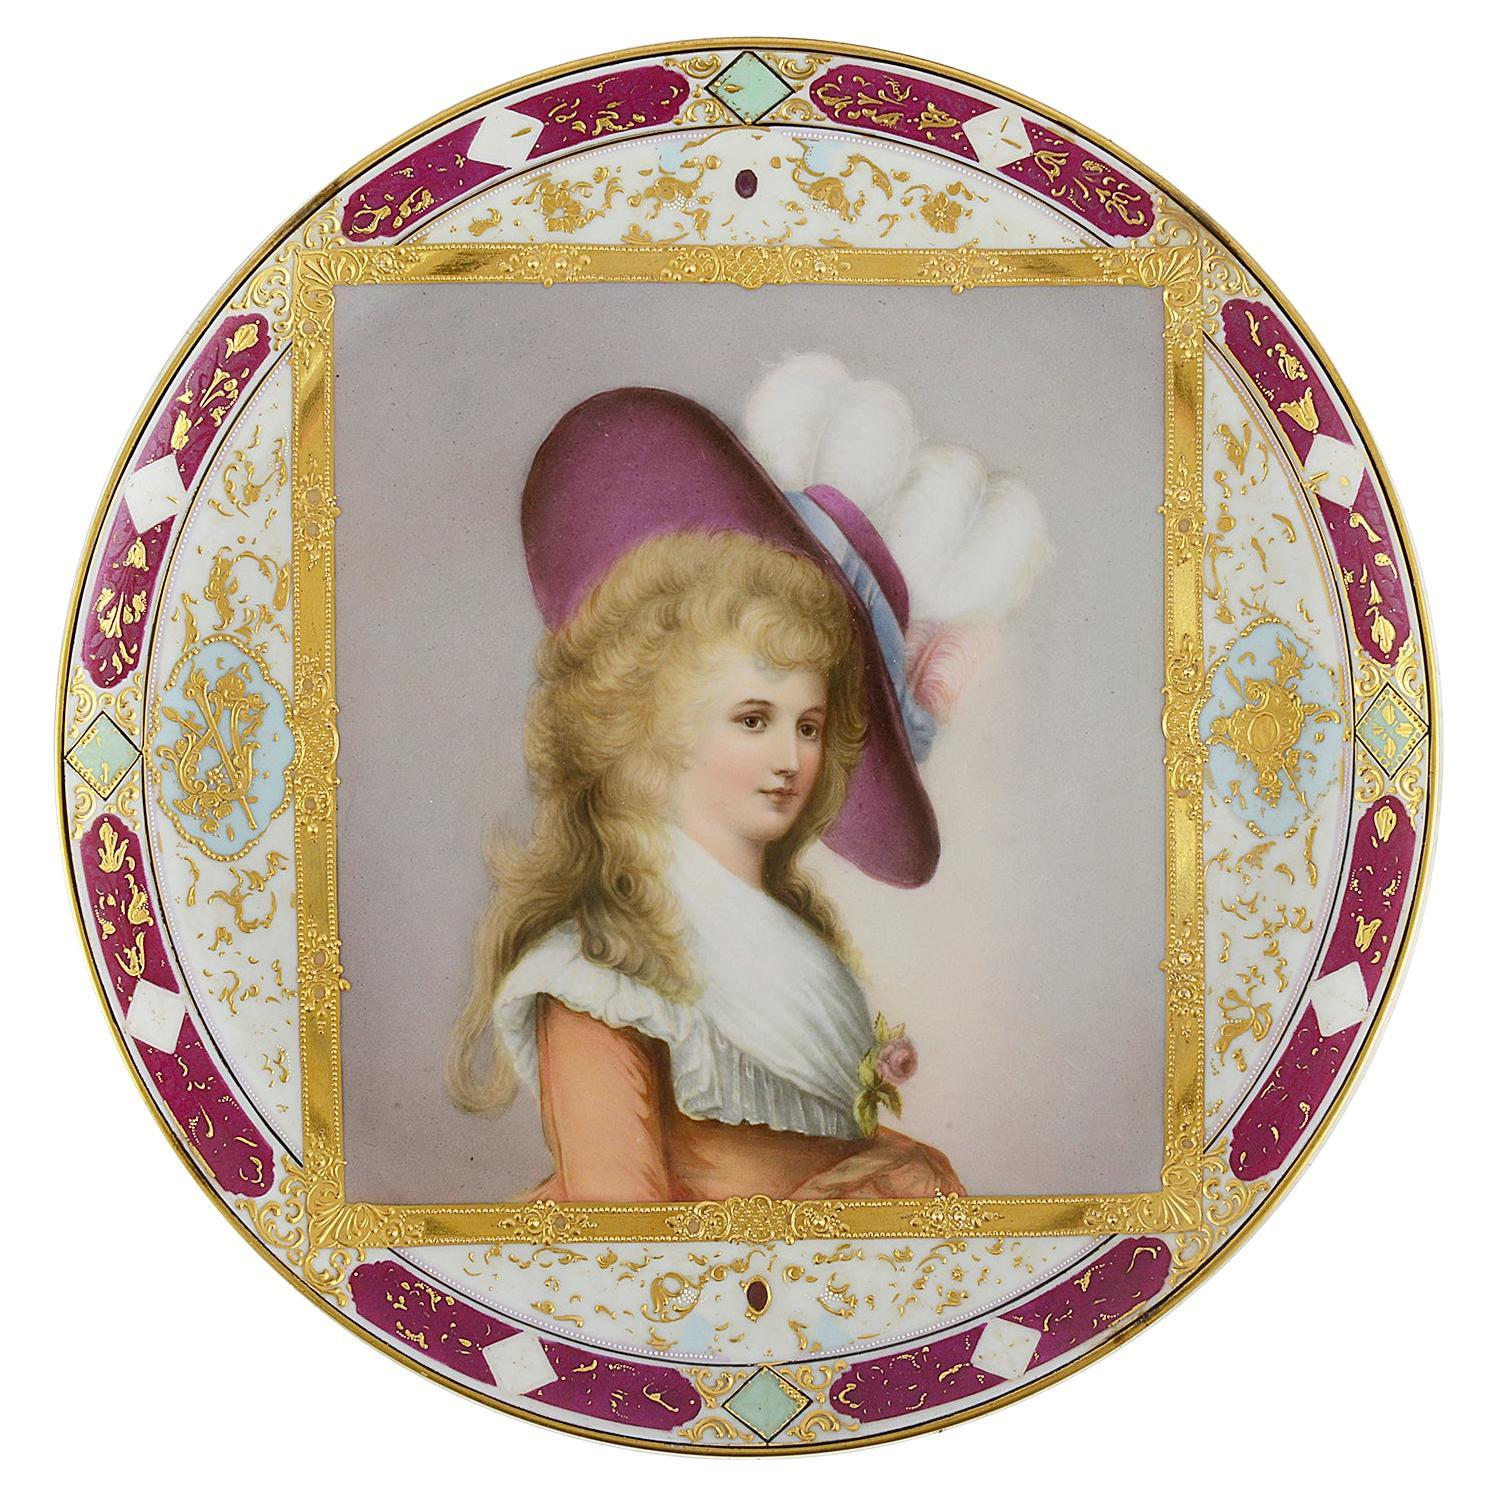 Porzellanteller im Wiener Stil des späten 19. Jahrhunderts, mit der Darstellung der Herzogin von Devonshire